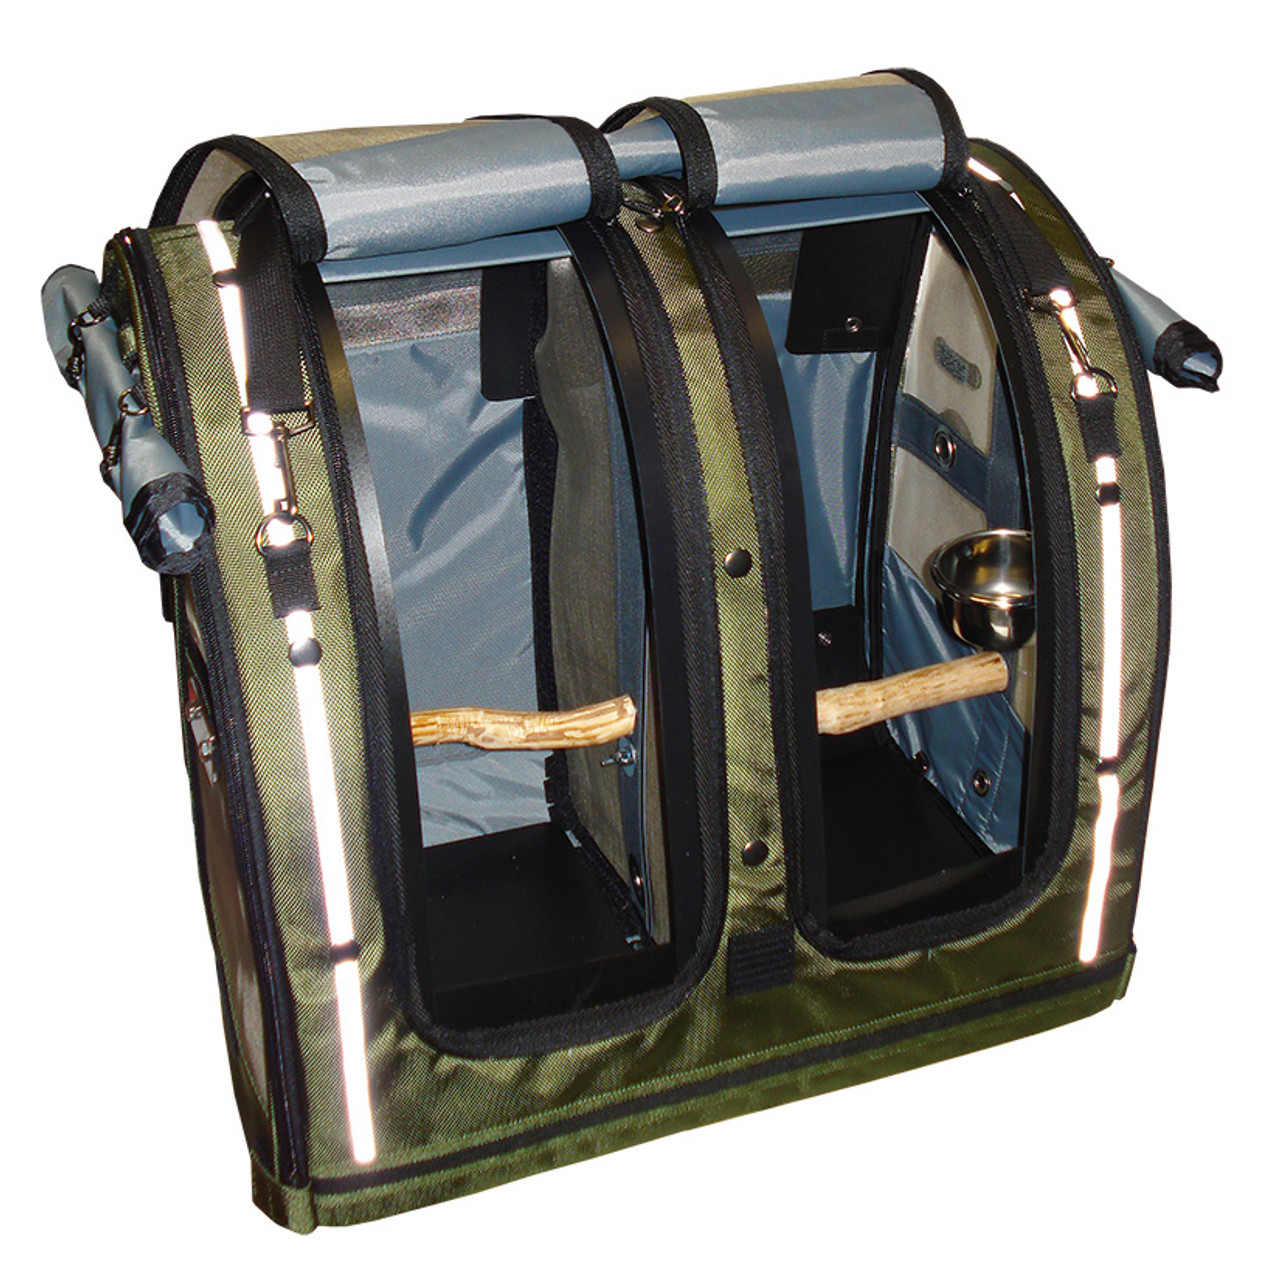 KORI SALES folding bag, shopping bag, traveling bag